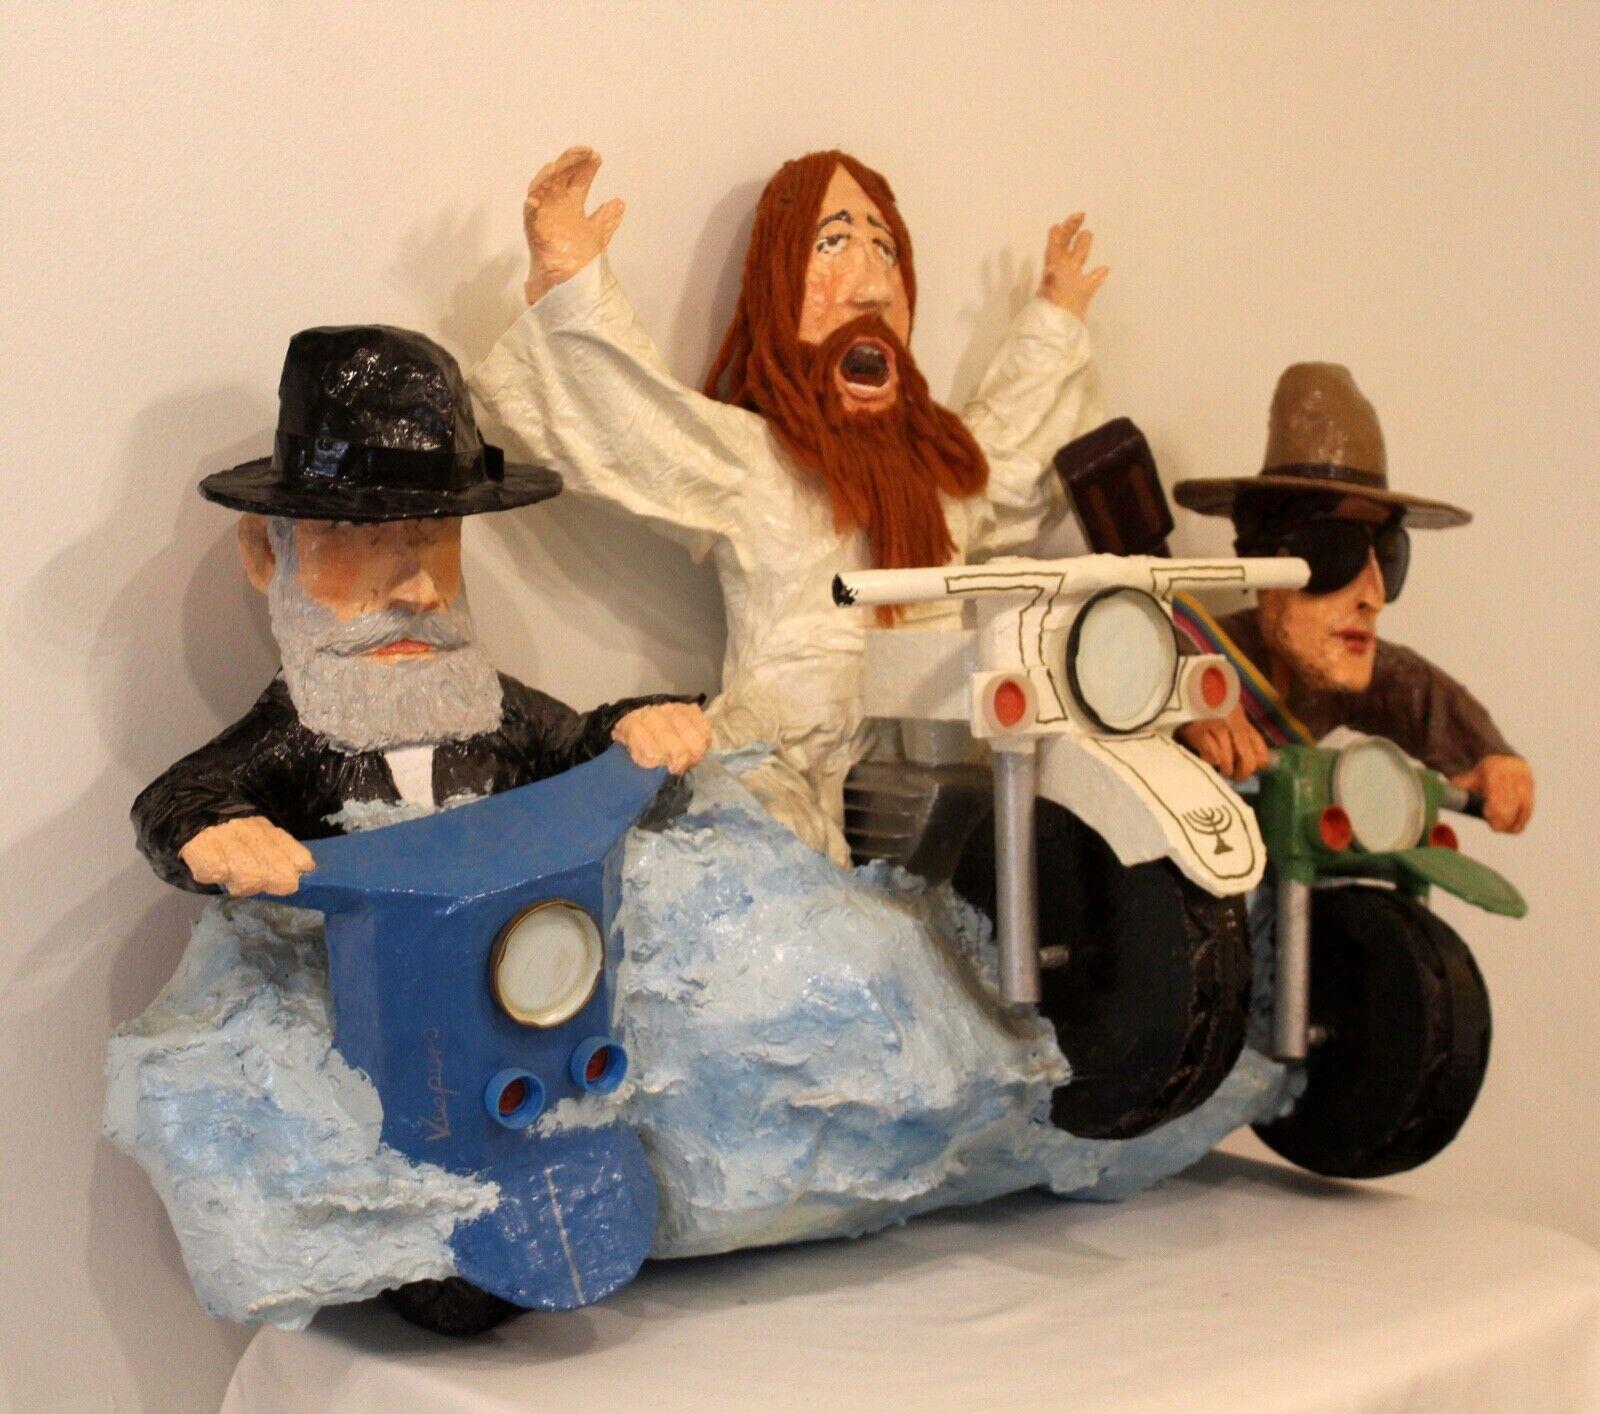 Der Hassidiker Rabbi und Bob Dylan, der auf einem Motorrad reitet, gehen mit Jesus auf die Straße, während er buchstäblich auf das Rad geht. Der Blick aller drei Charaktere strahlt Glanz aus, während sie auf diesem unkonventionellen Fahrrad durch